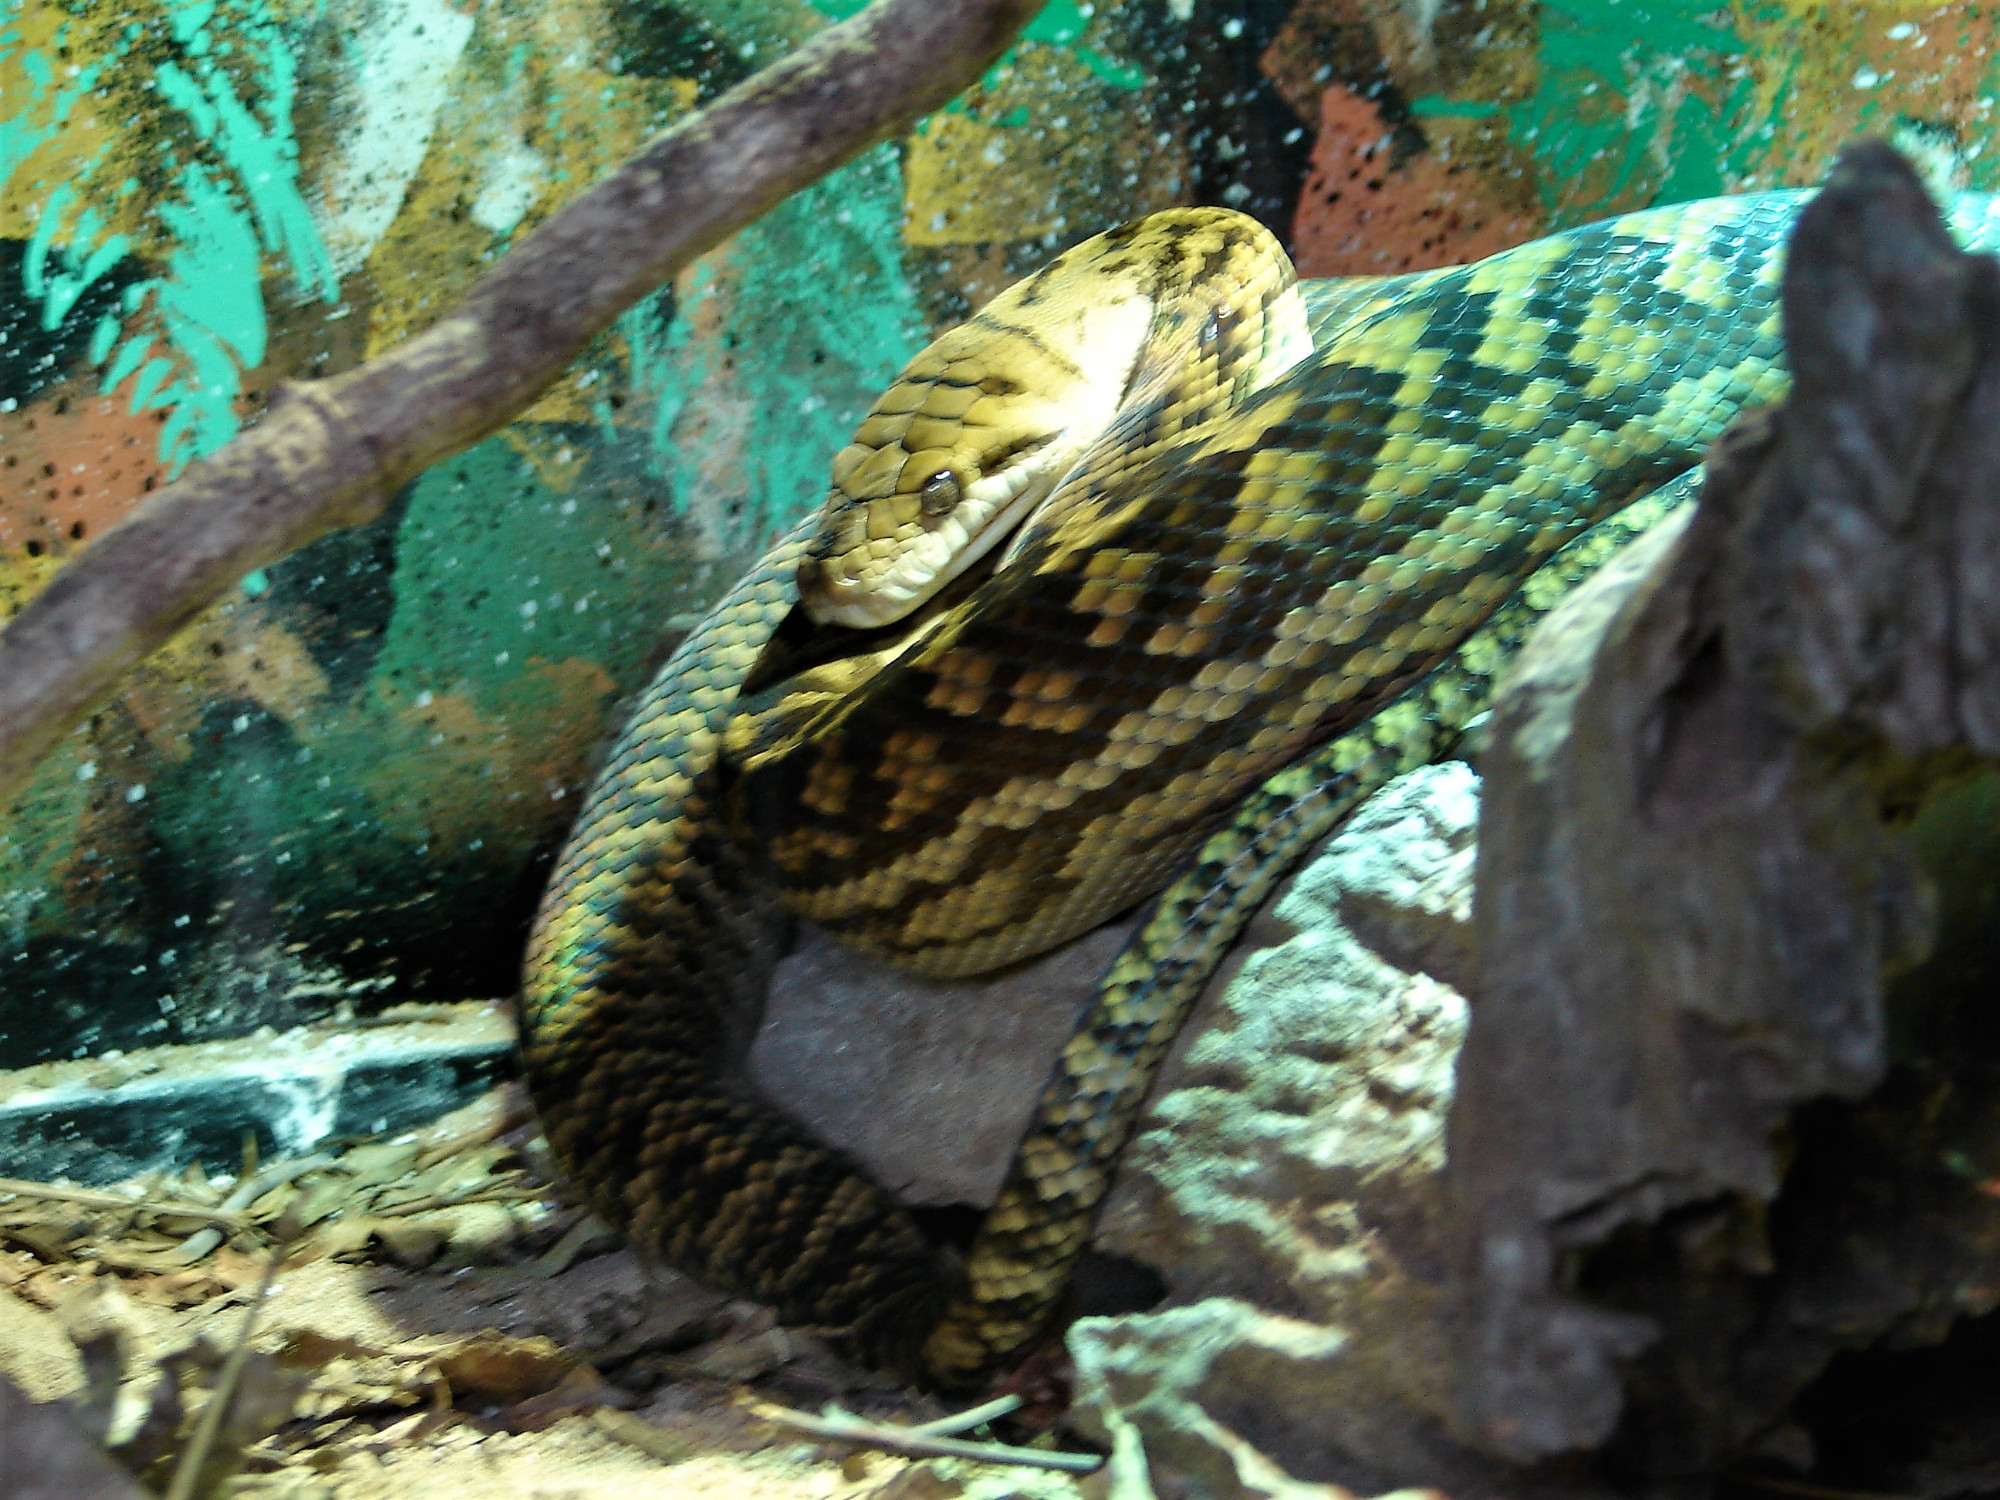 Amethystine python<br/>
Snake